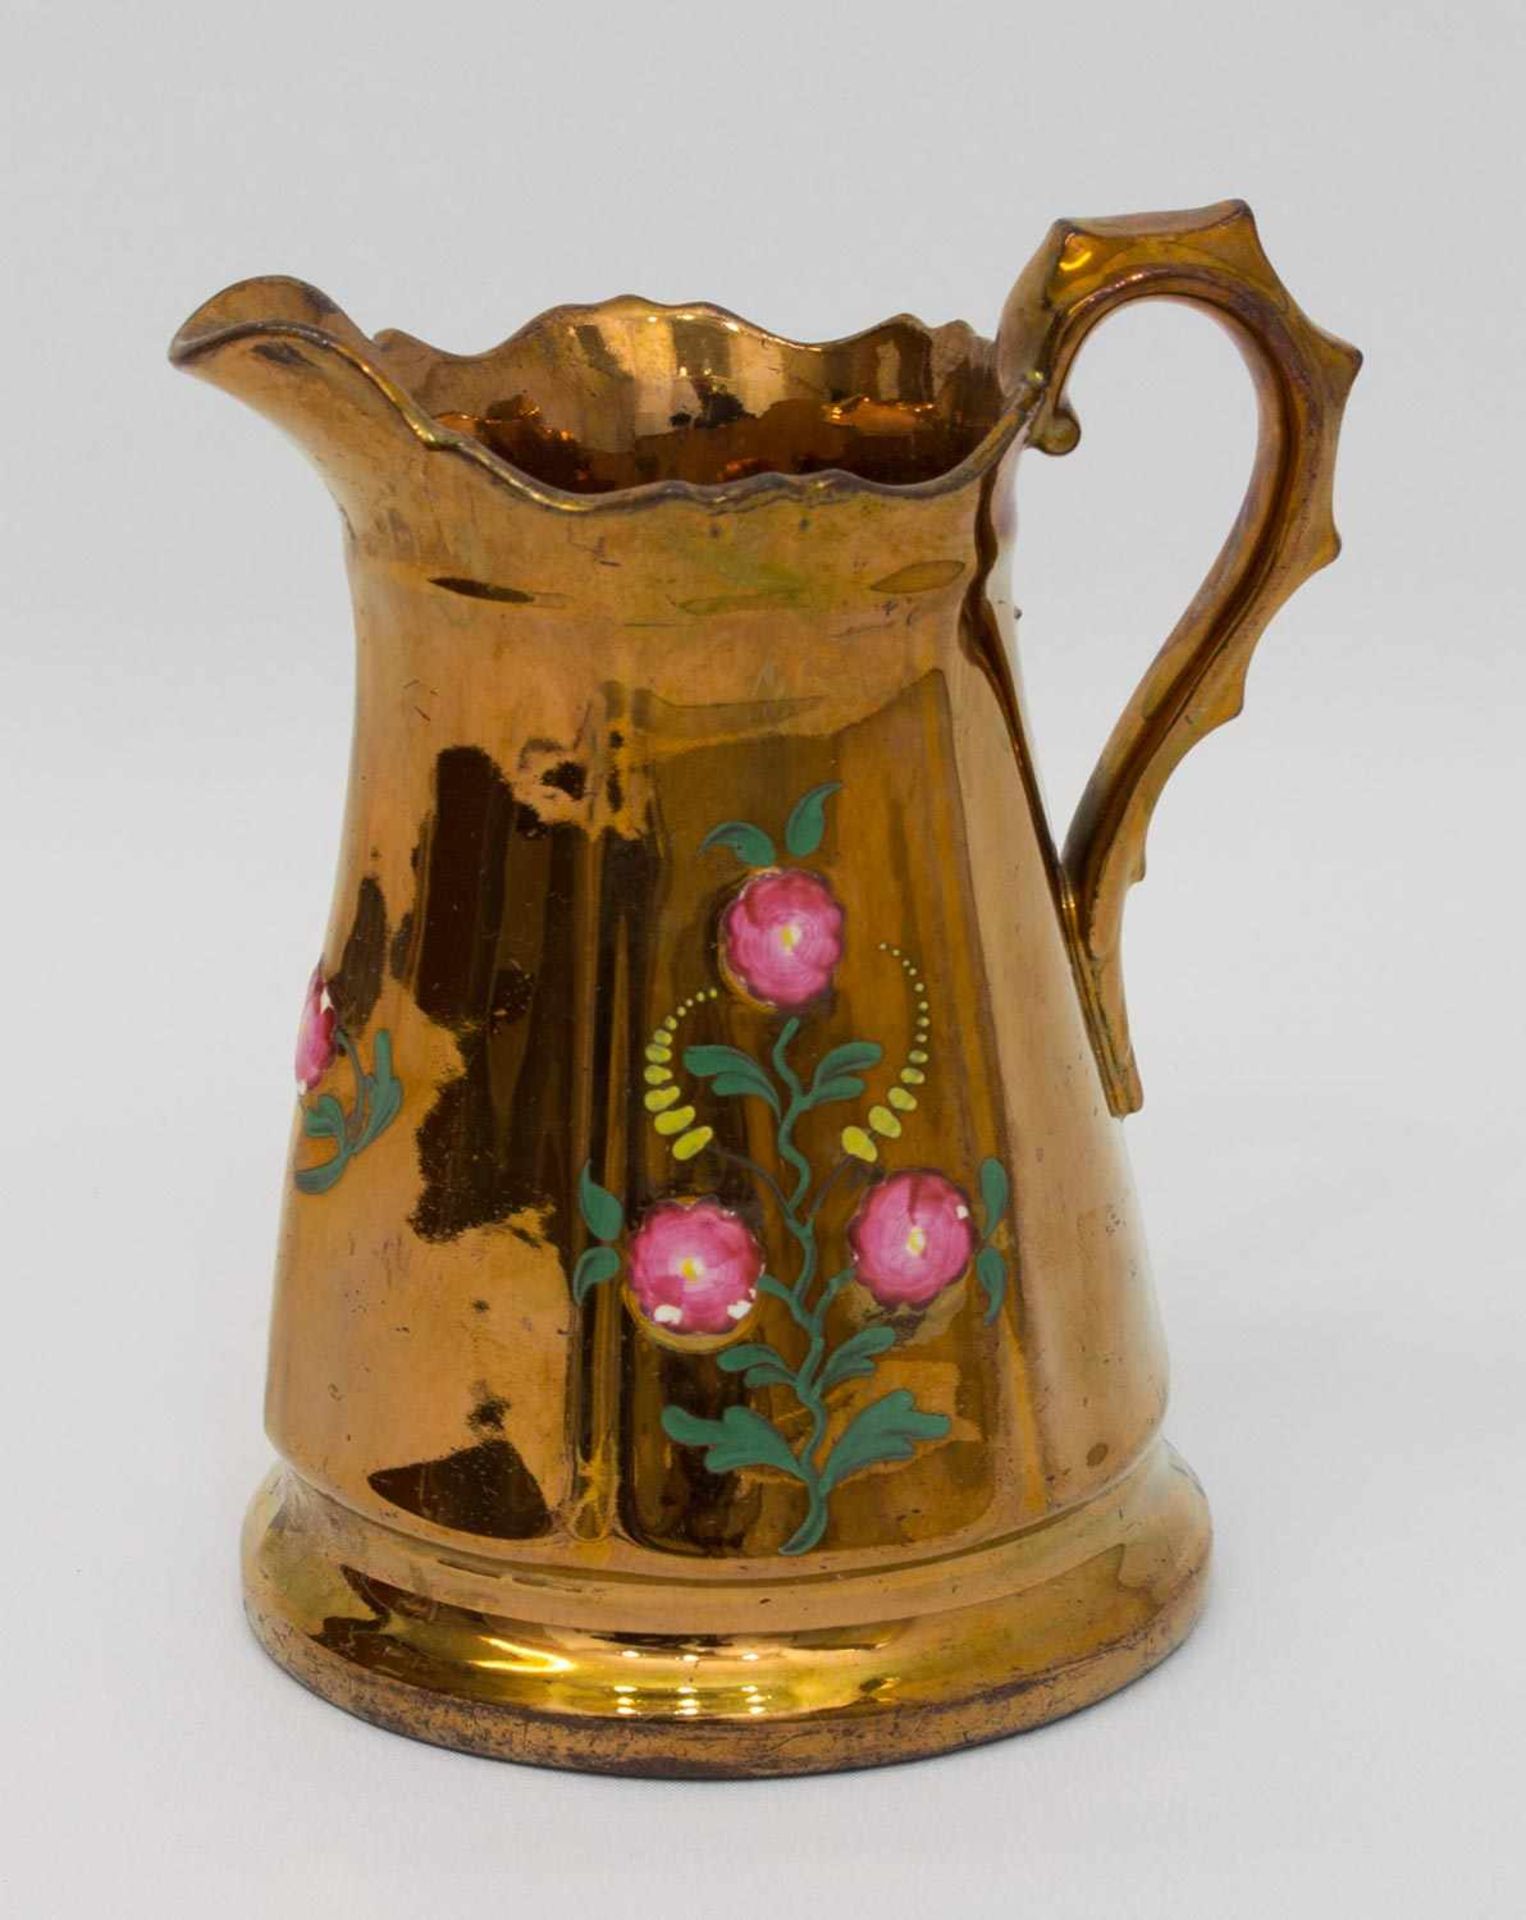 Milchkrug England, Ende 19. Jh., Kupferlüsterglasur mit polychromen Blumendekor, H. 15 cm